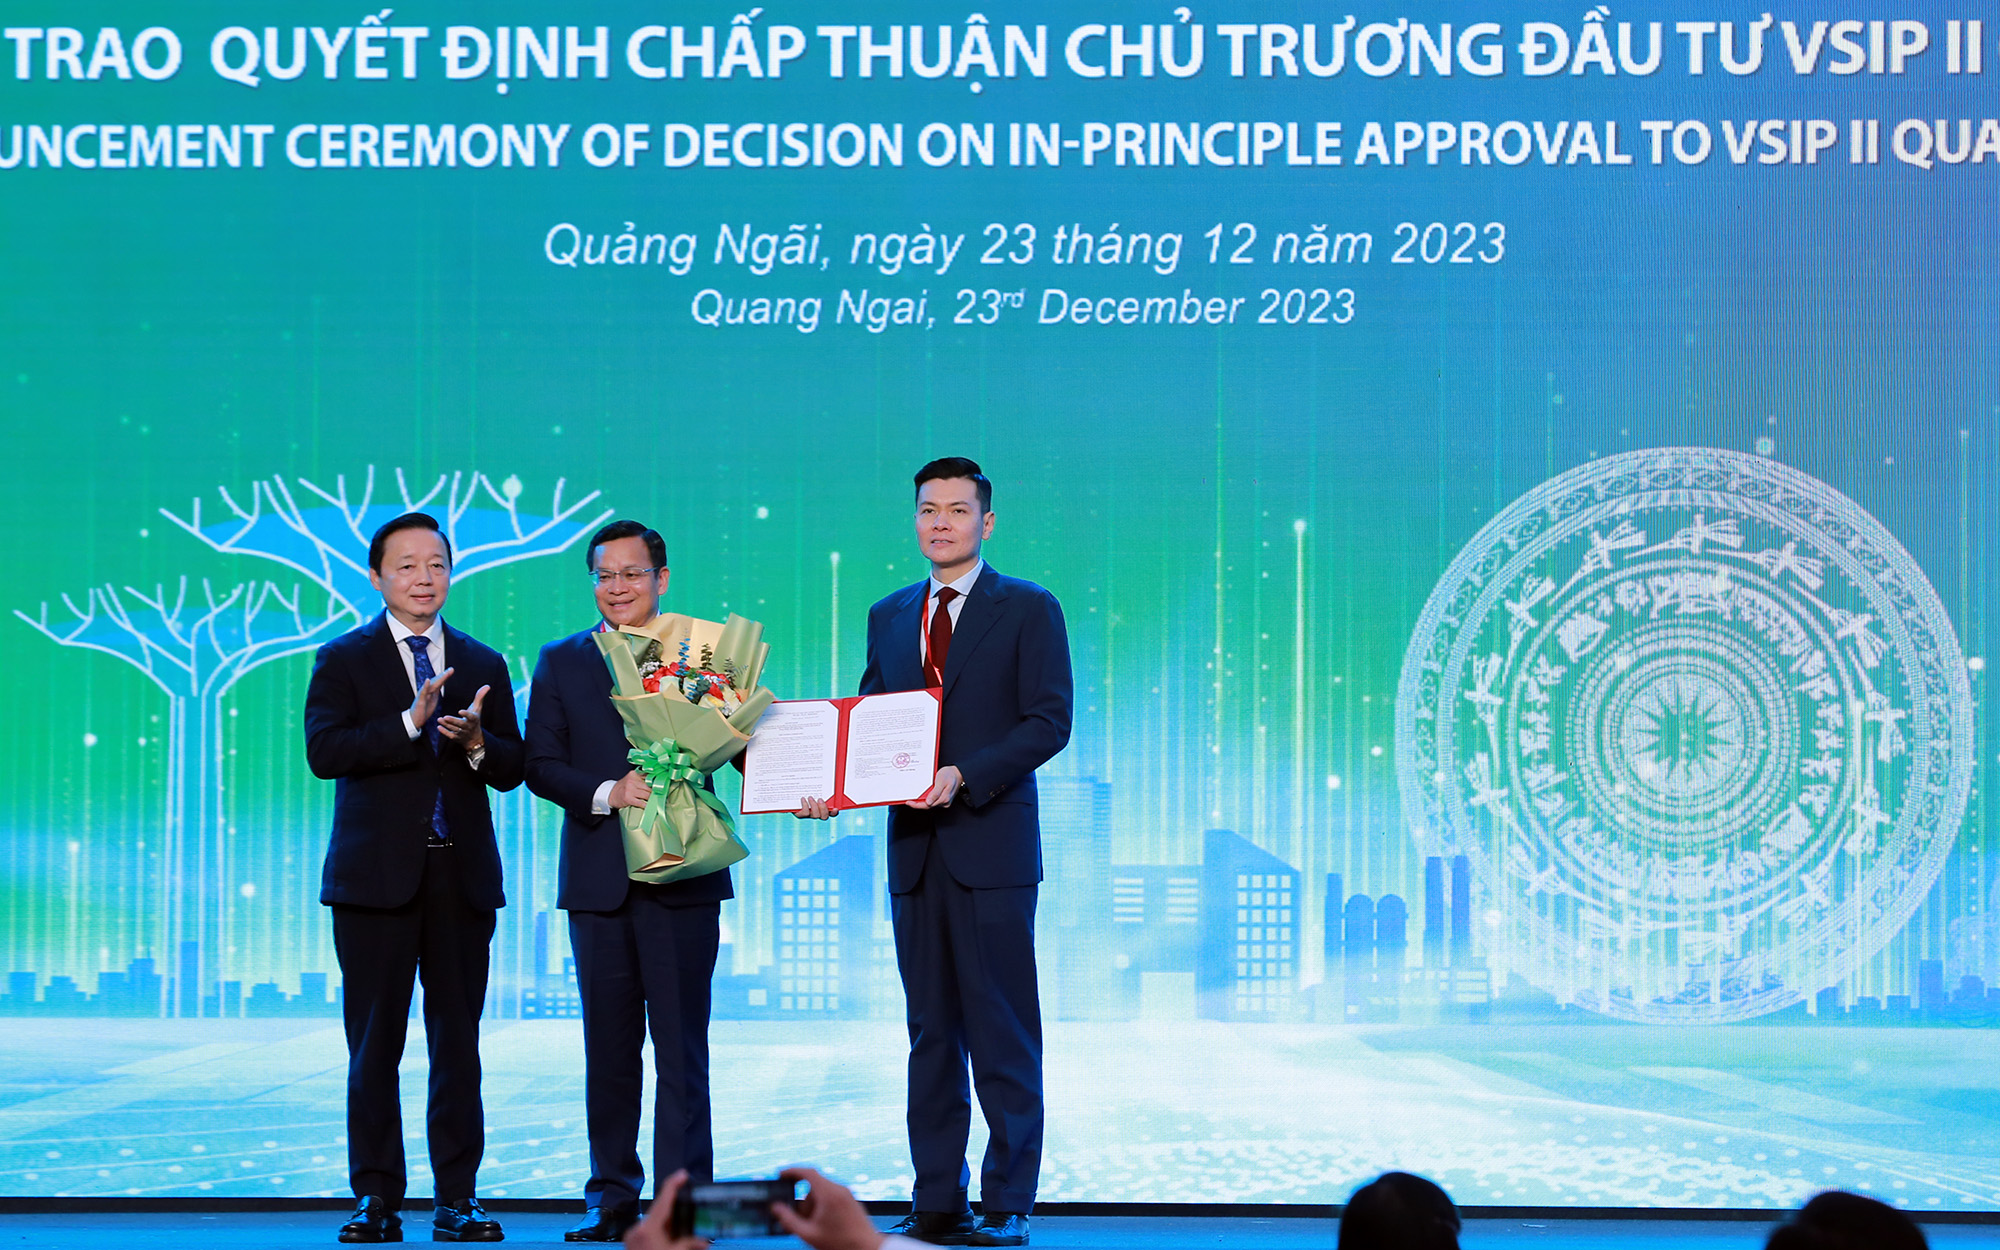 Phó Thủ tướng Trần Hồng Hà trao quyết định chấp thuận chủ trương đầu tư VSIPII Quảng Ngãi - Ảnh: VGP/Minh Khôi